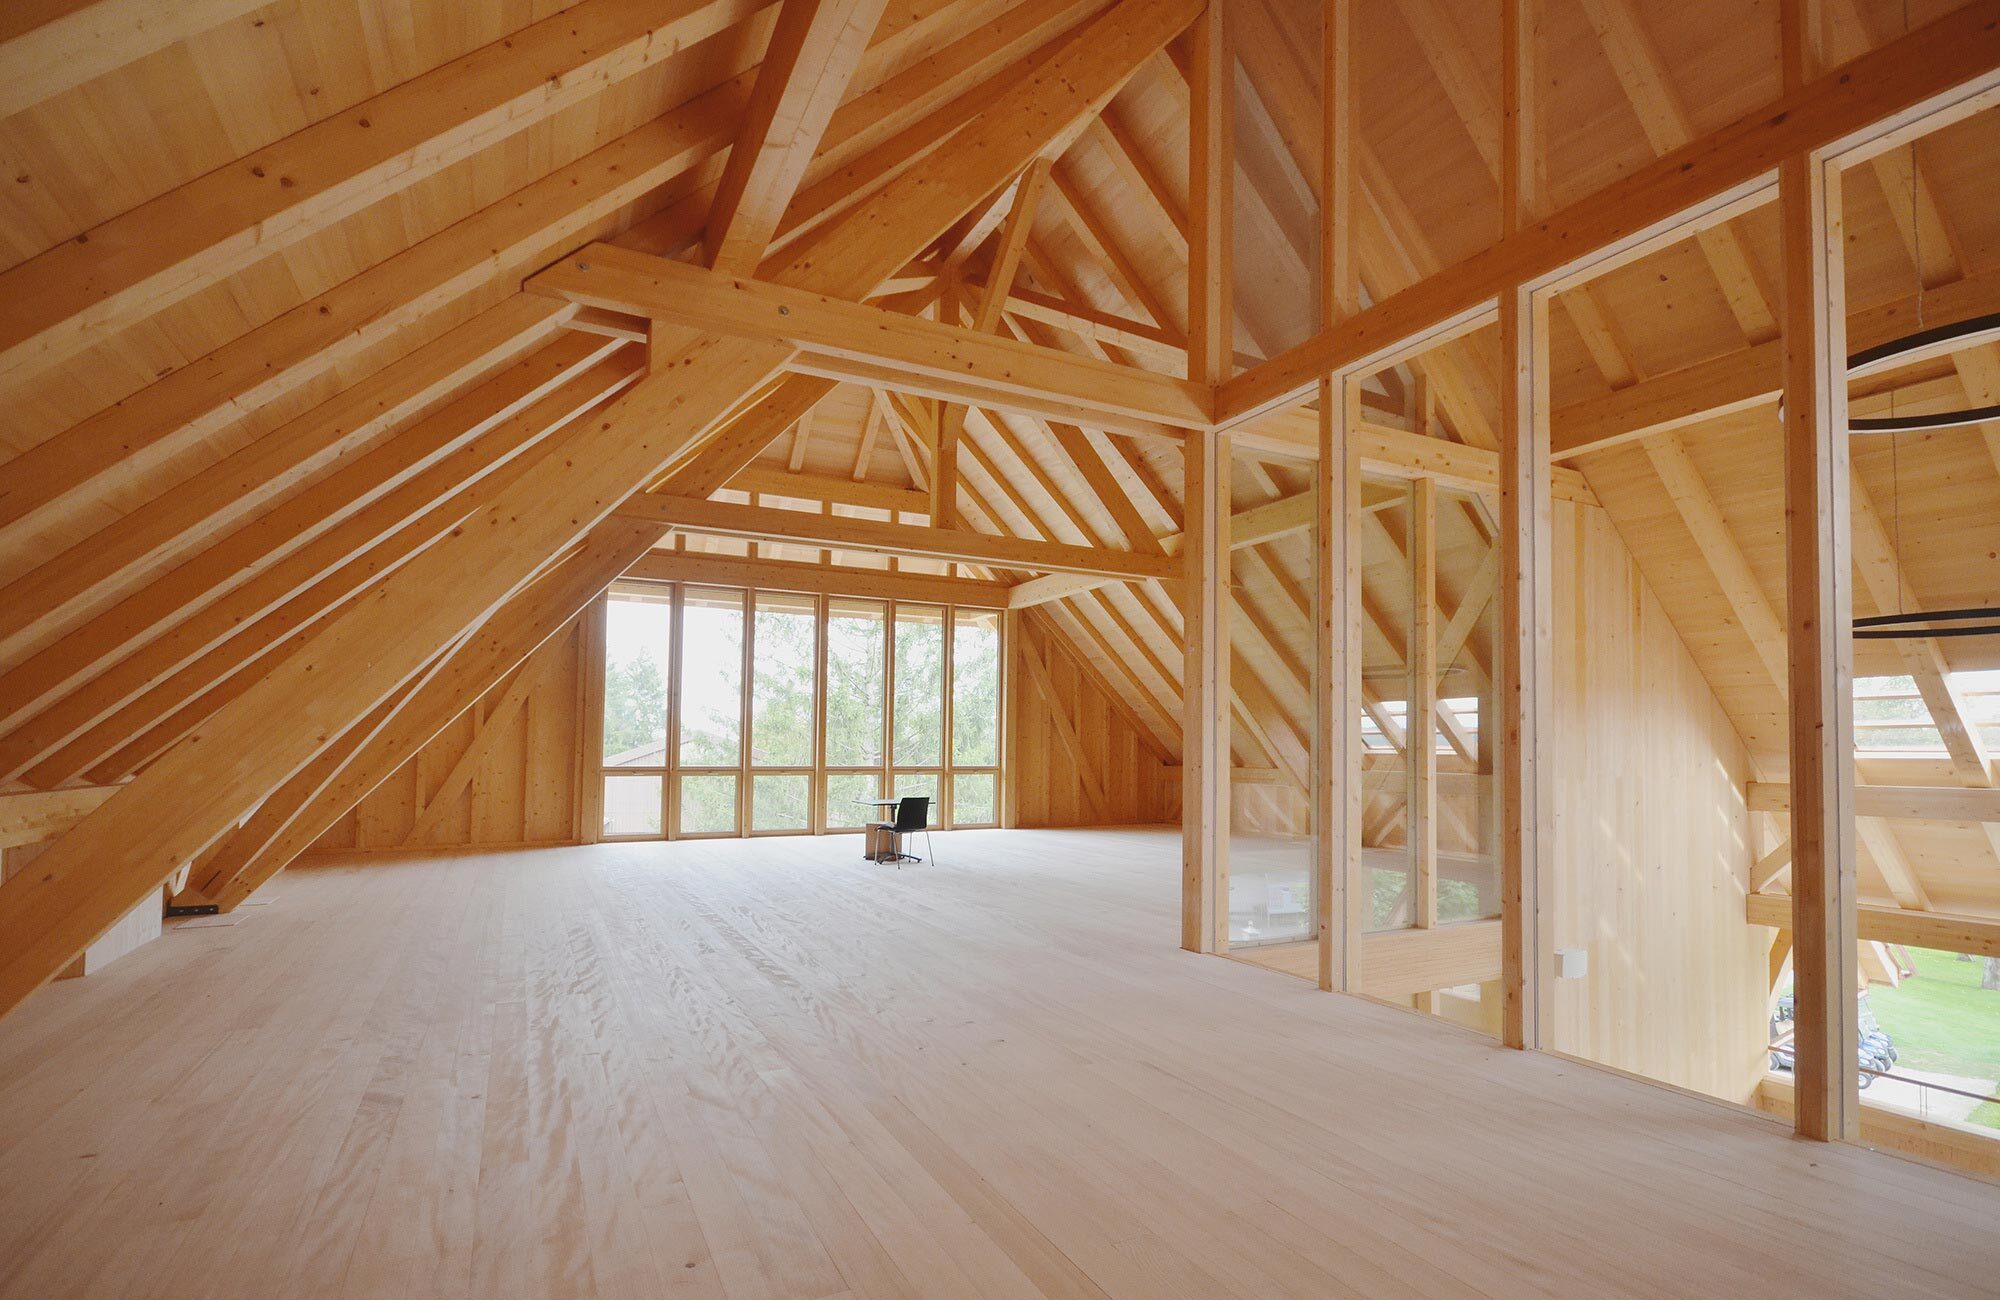 Dachgeschoss aus Holz mit Balken